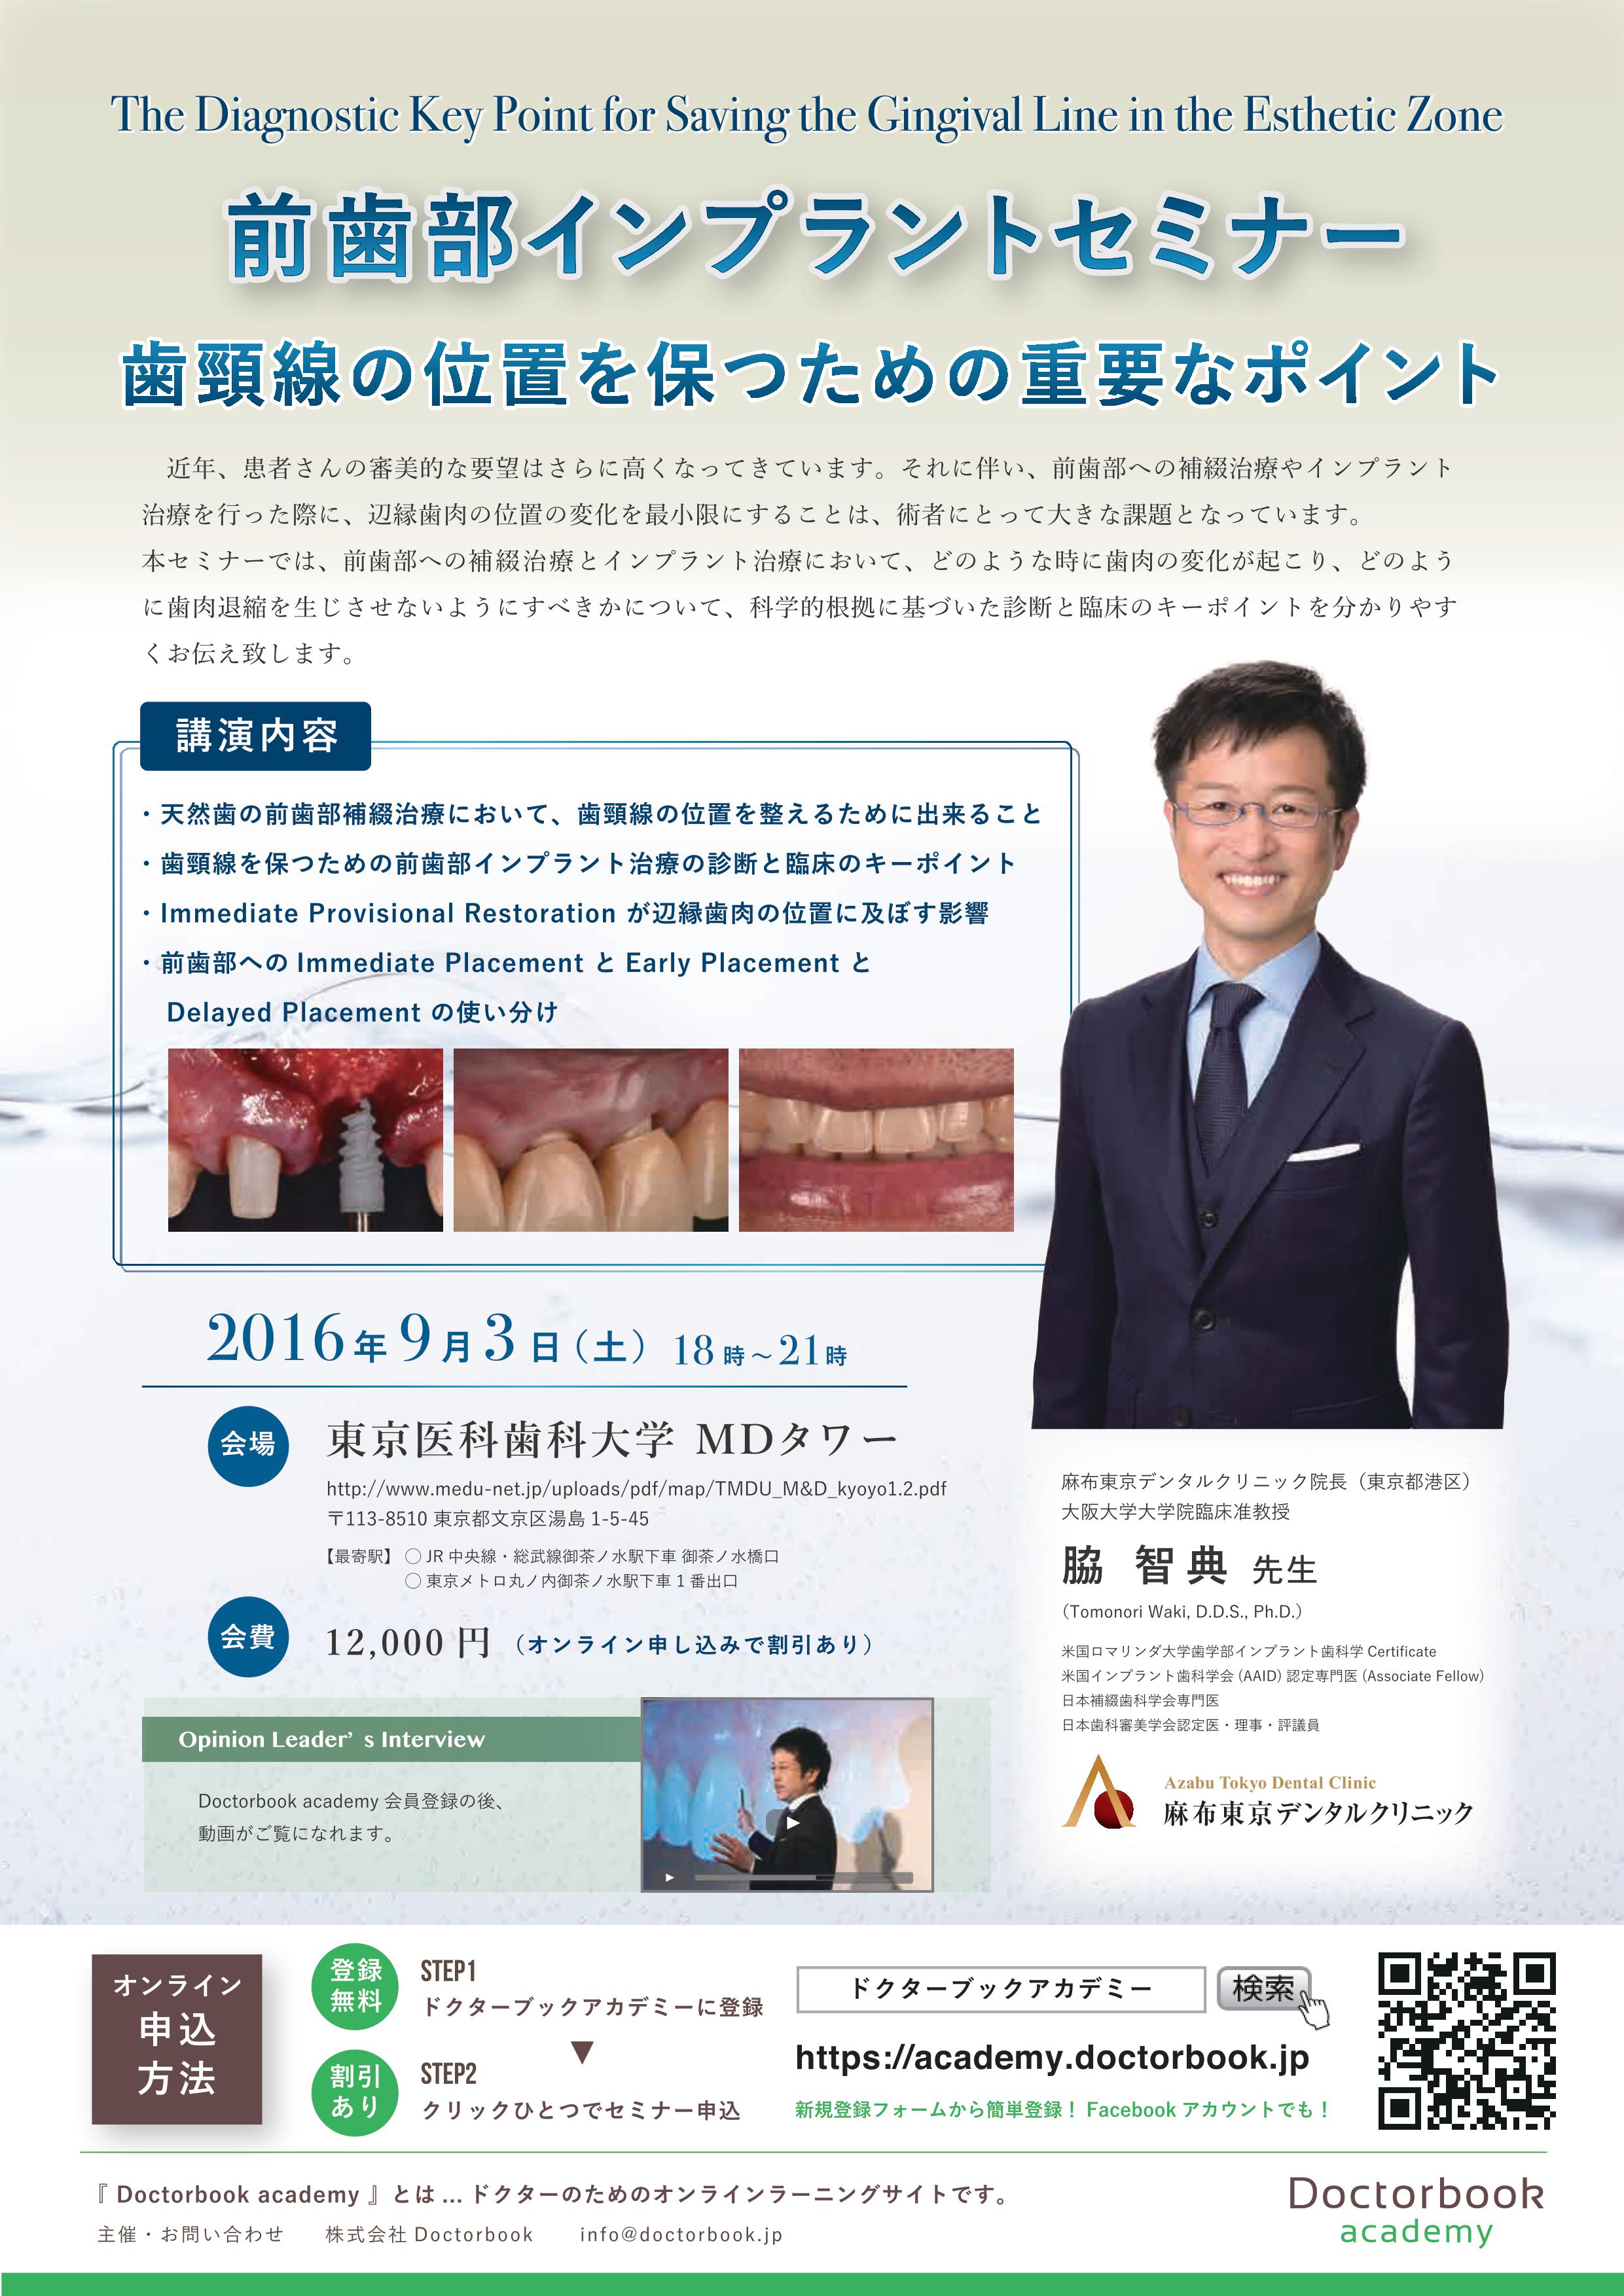 脇智典先生 前歯部インプラントセミナー Doctorbook Academy